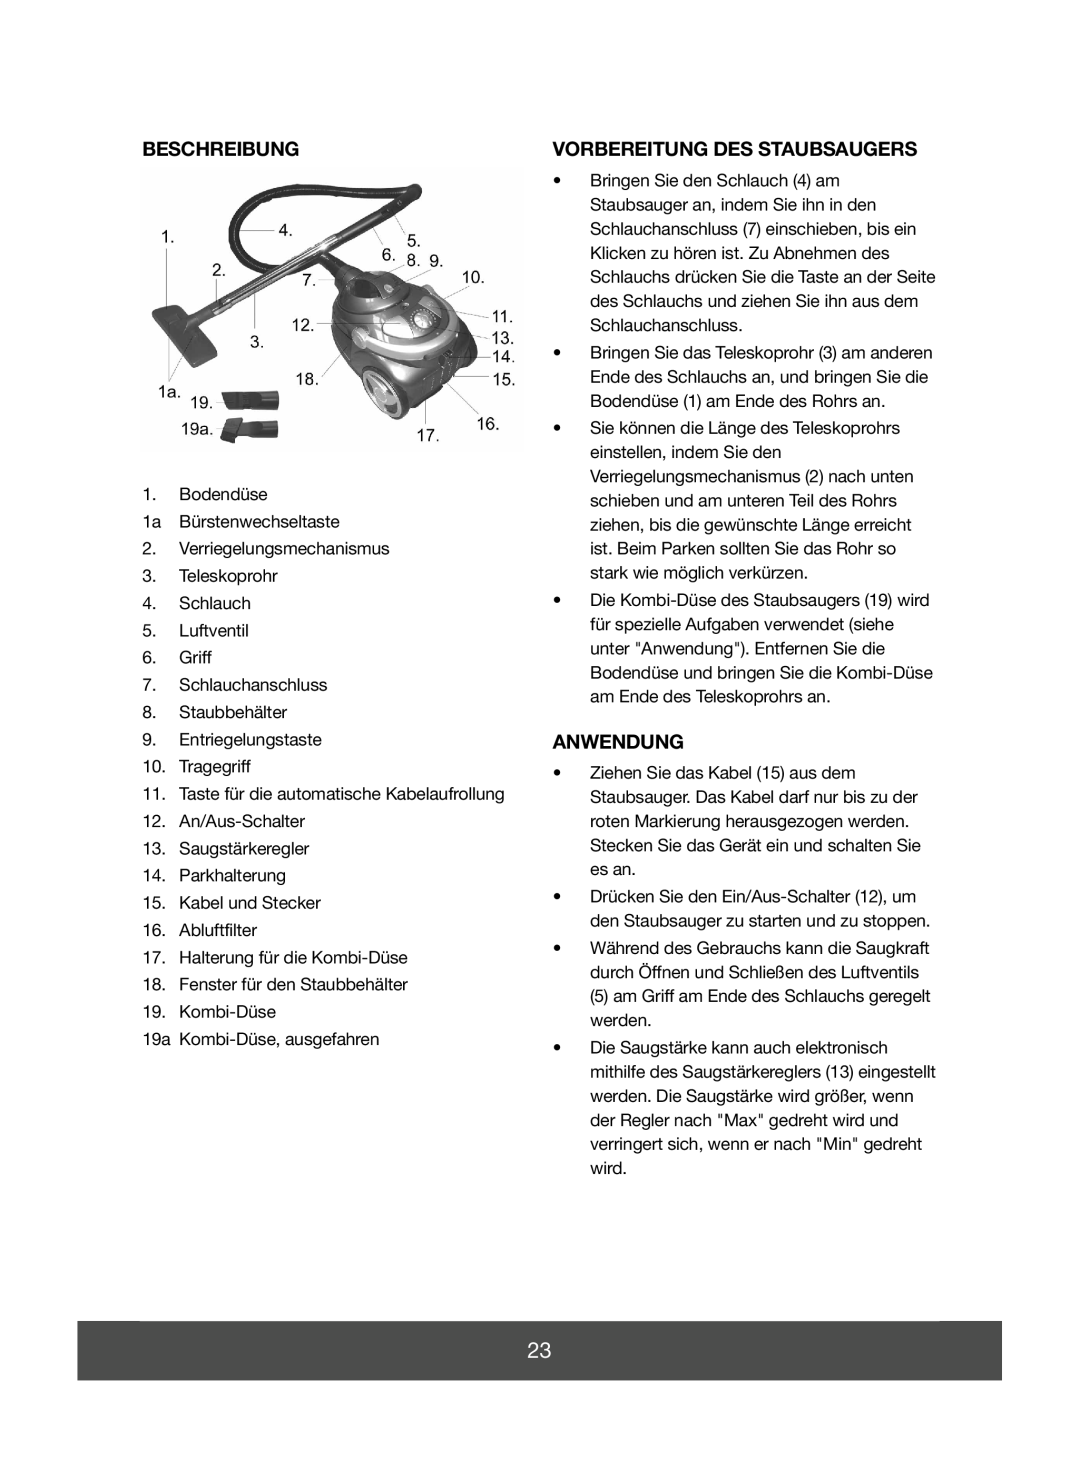 Melissa 640-139 manual Beschreibung, Vorbereitung Des Staubsaugers, Anwendung 